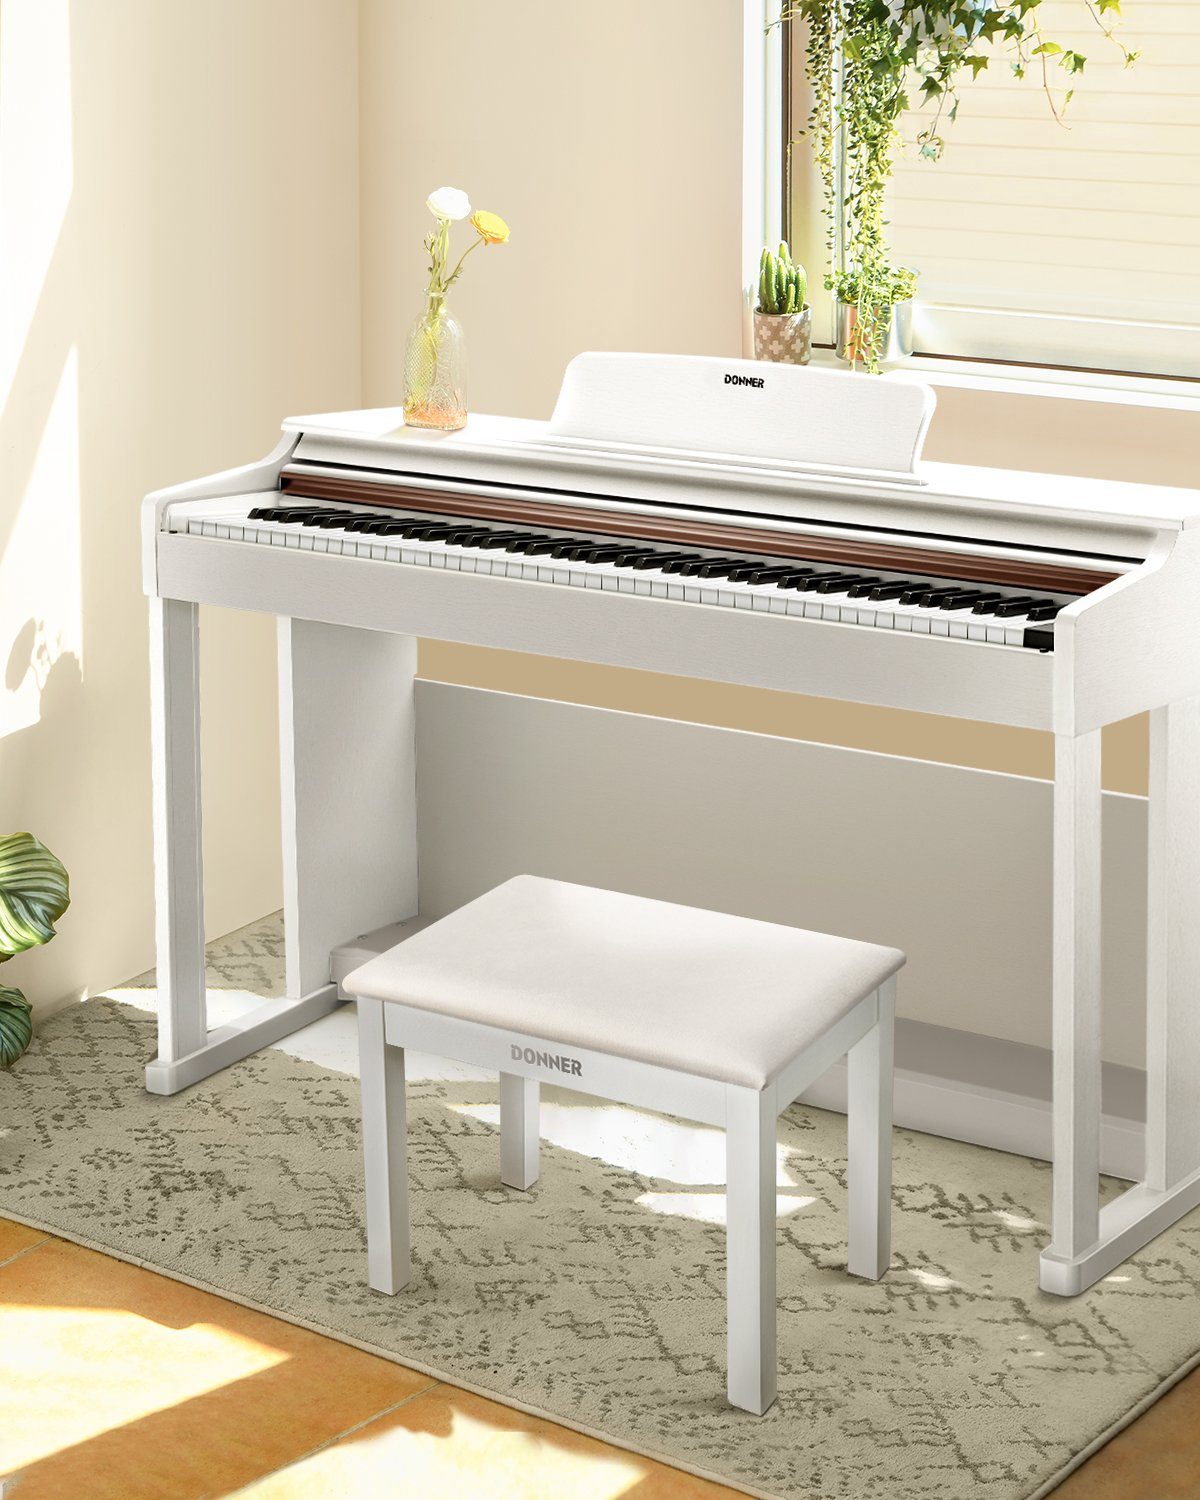 Solid Weiss Stauraum High-Density Wooden Klavierhocker Klavierbank Padded DKB-10, Klavierbank mit Cushion Donner